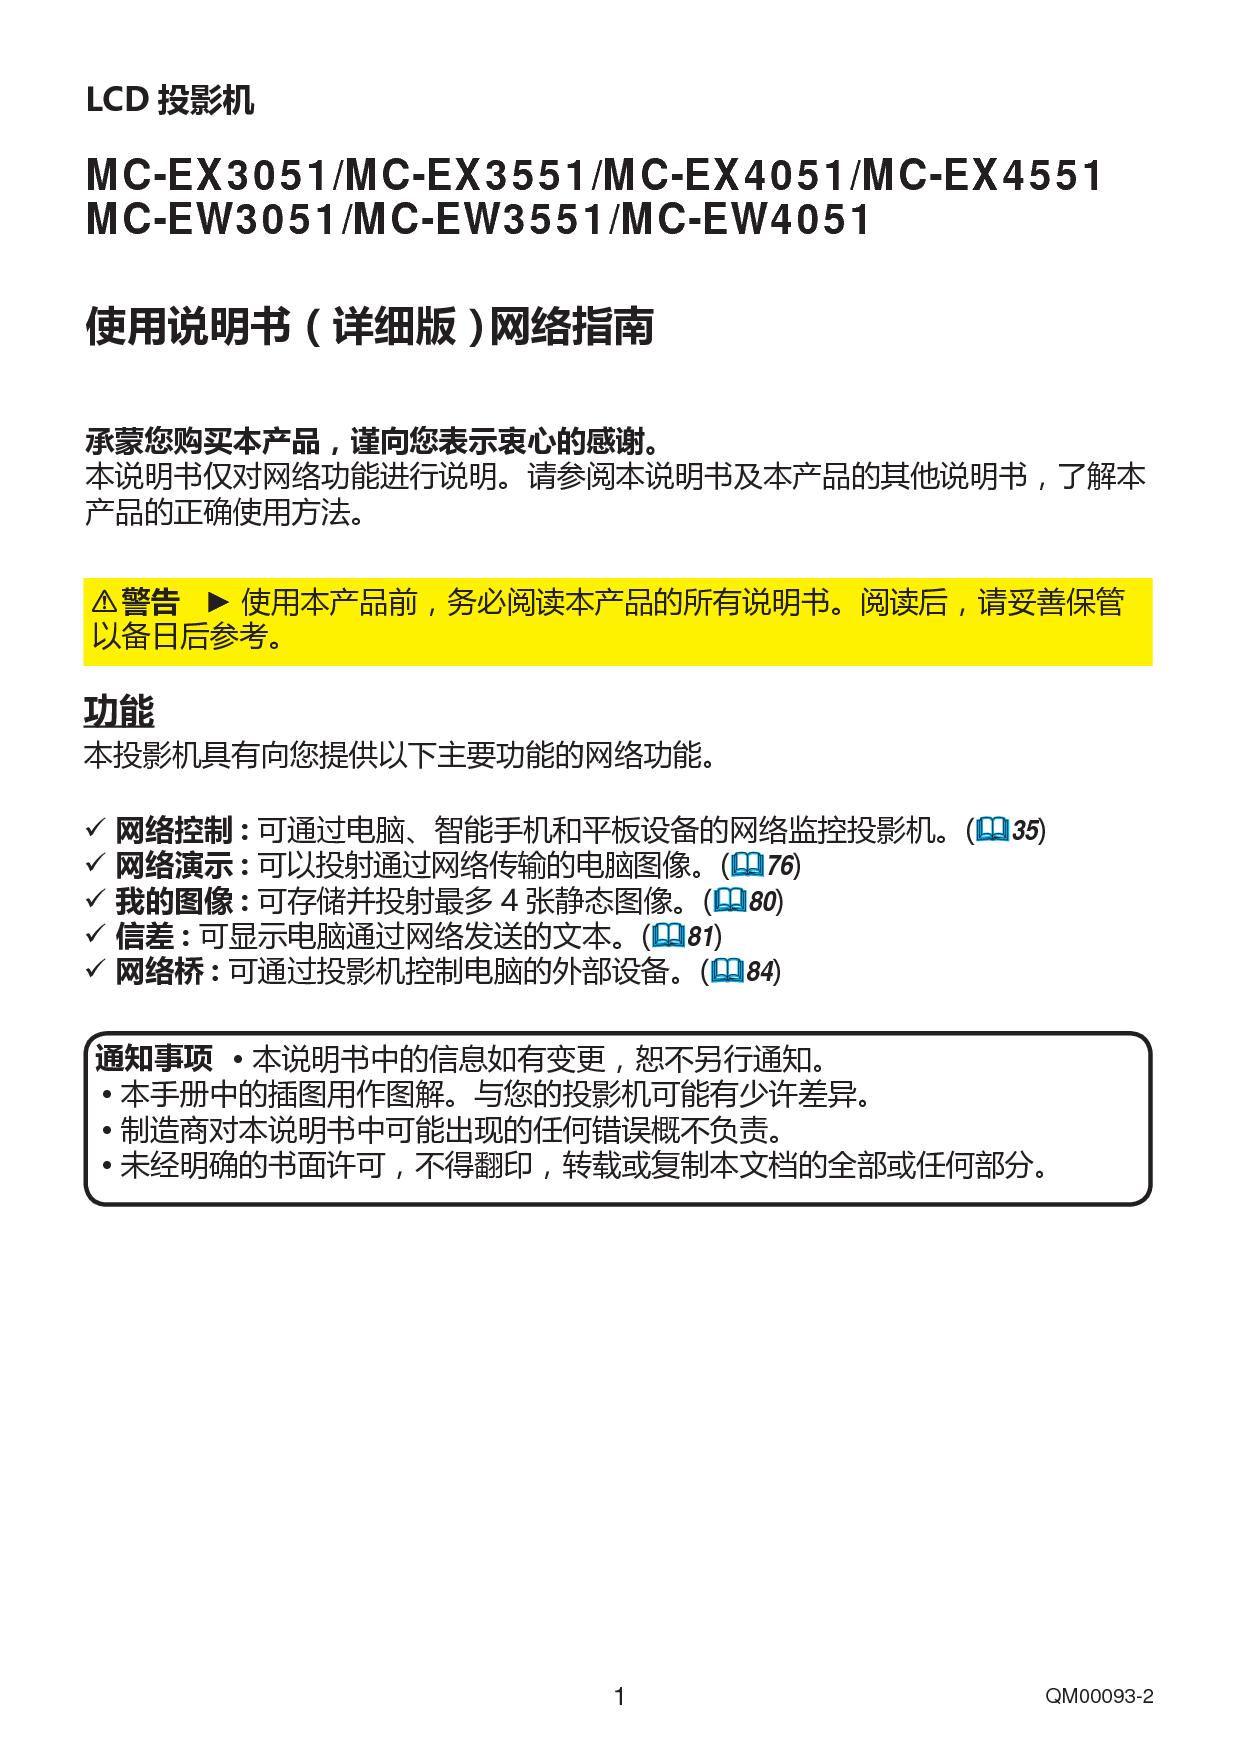 日立 Hitachi MC-EW3051 网络指南 封面